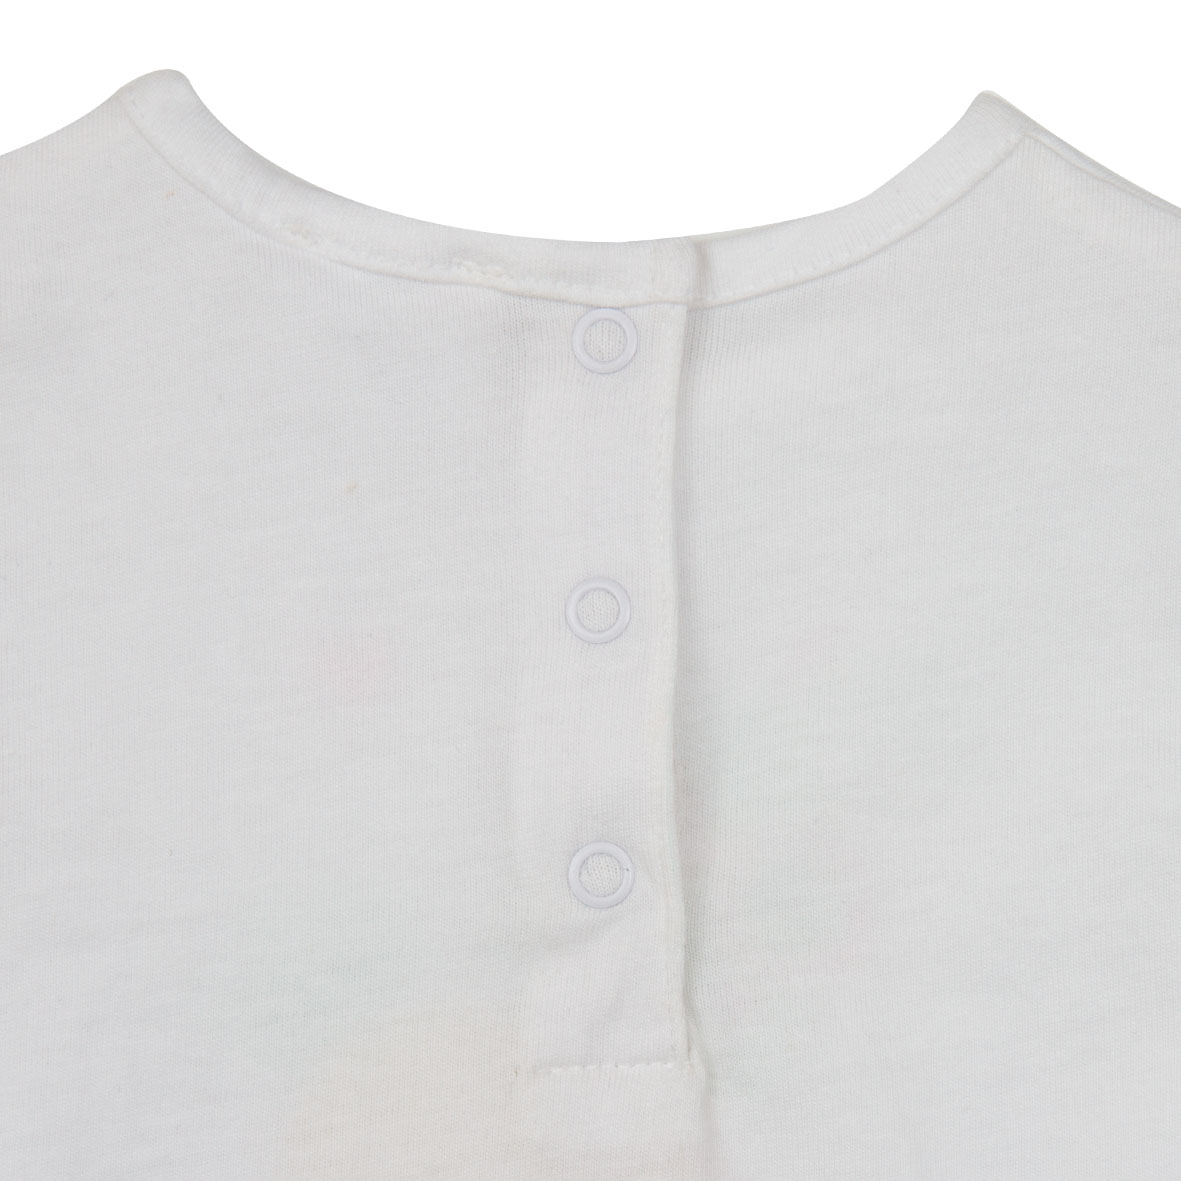 Mawi t-shirt jersey manica corta stampa - Mawi